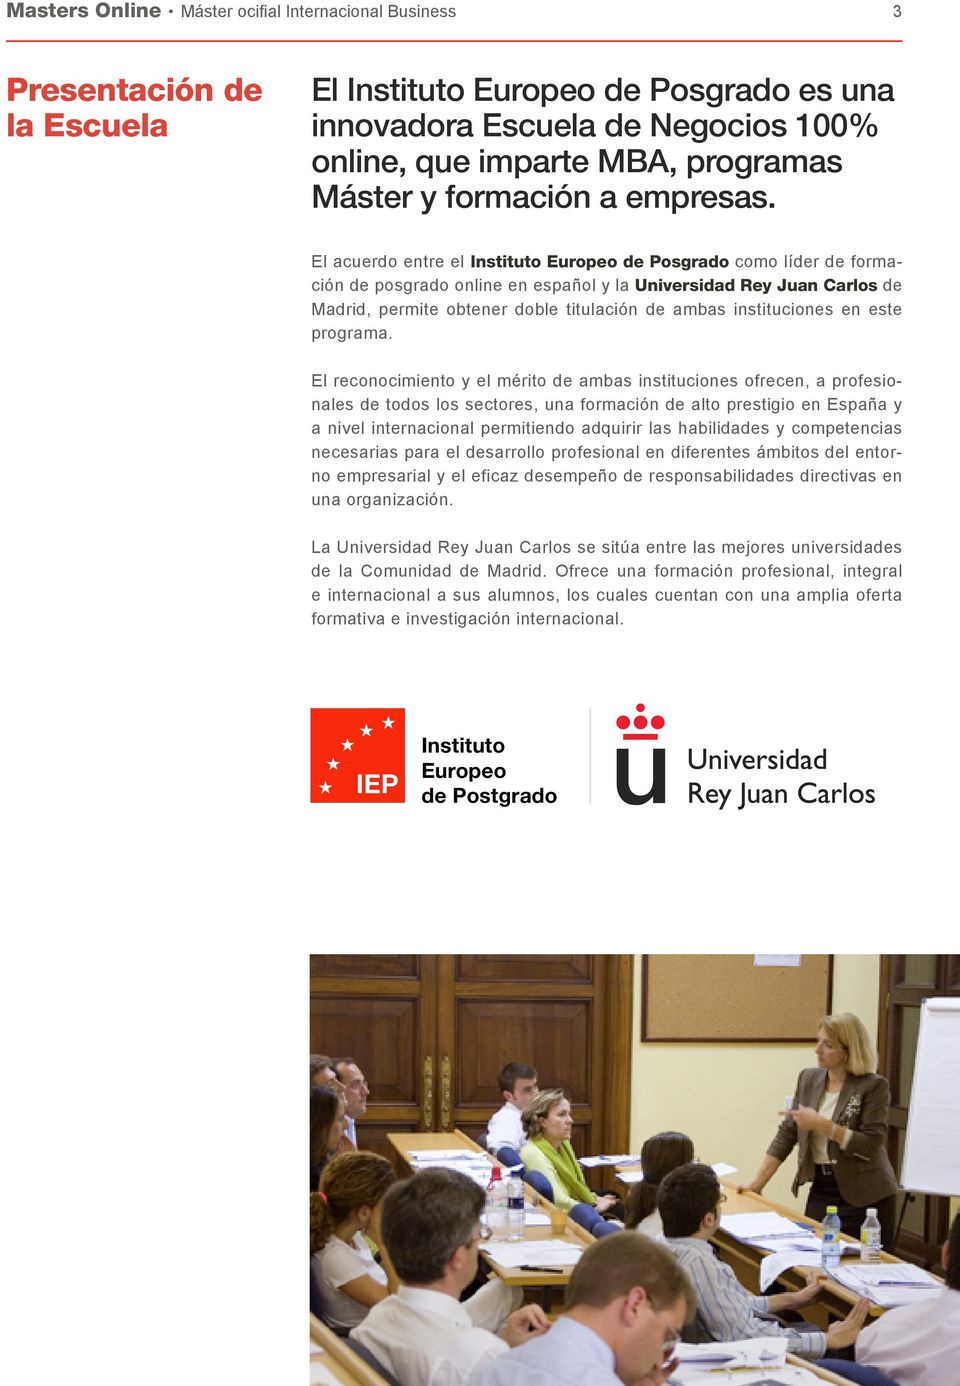 El acuerdo entre el Instituto Europeo de Posgrado como líder de formación de posgrado online en español y la Universidad Rey Juan Carlos de Madrid, permite obtener doble titulación de ambas